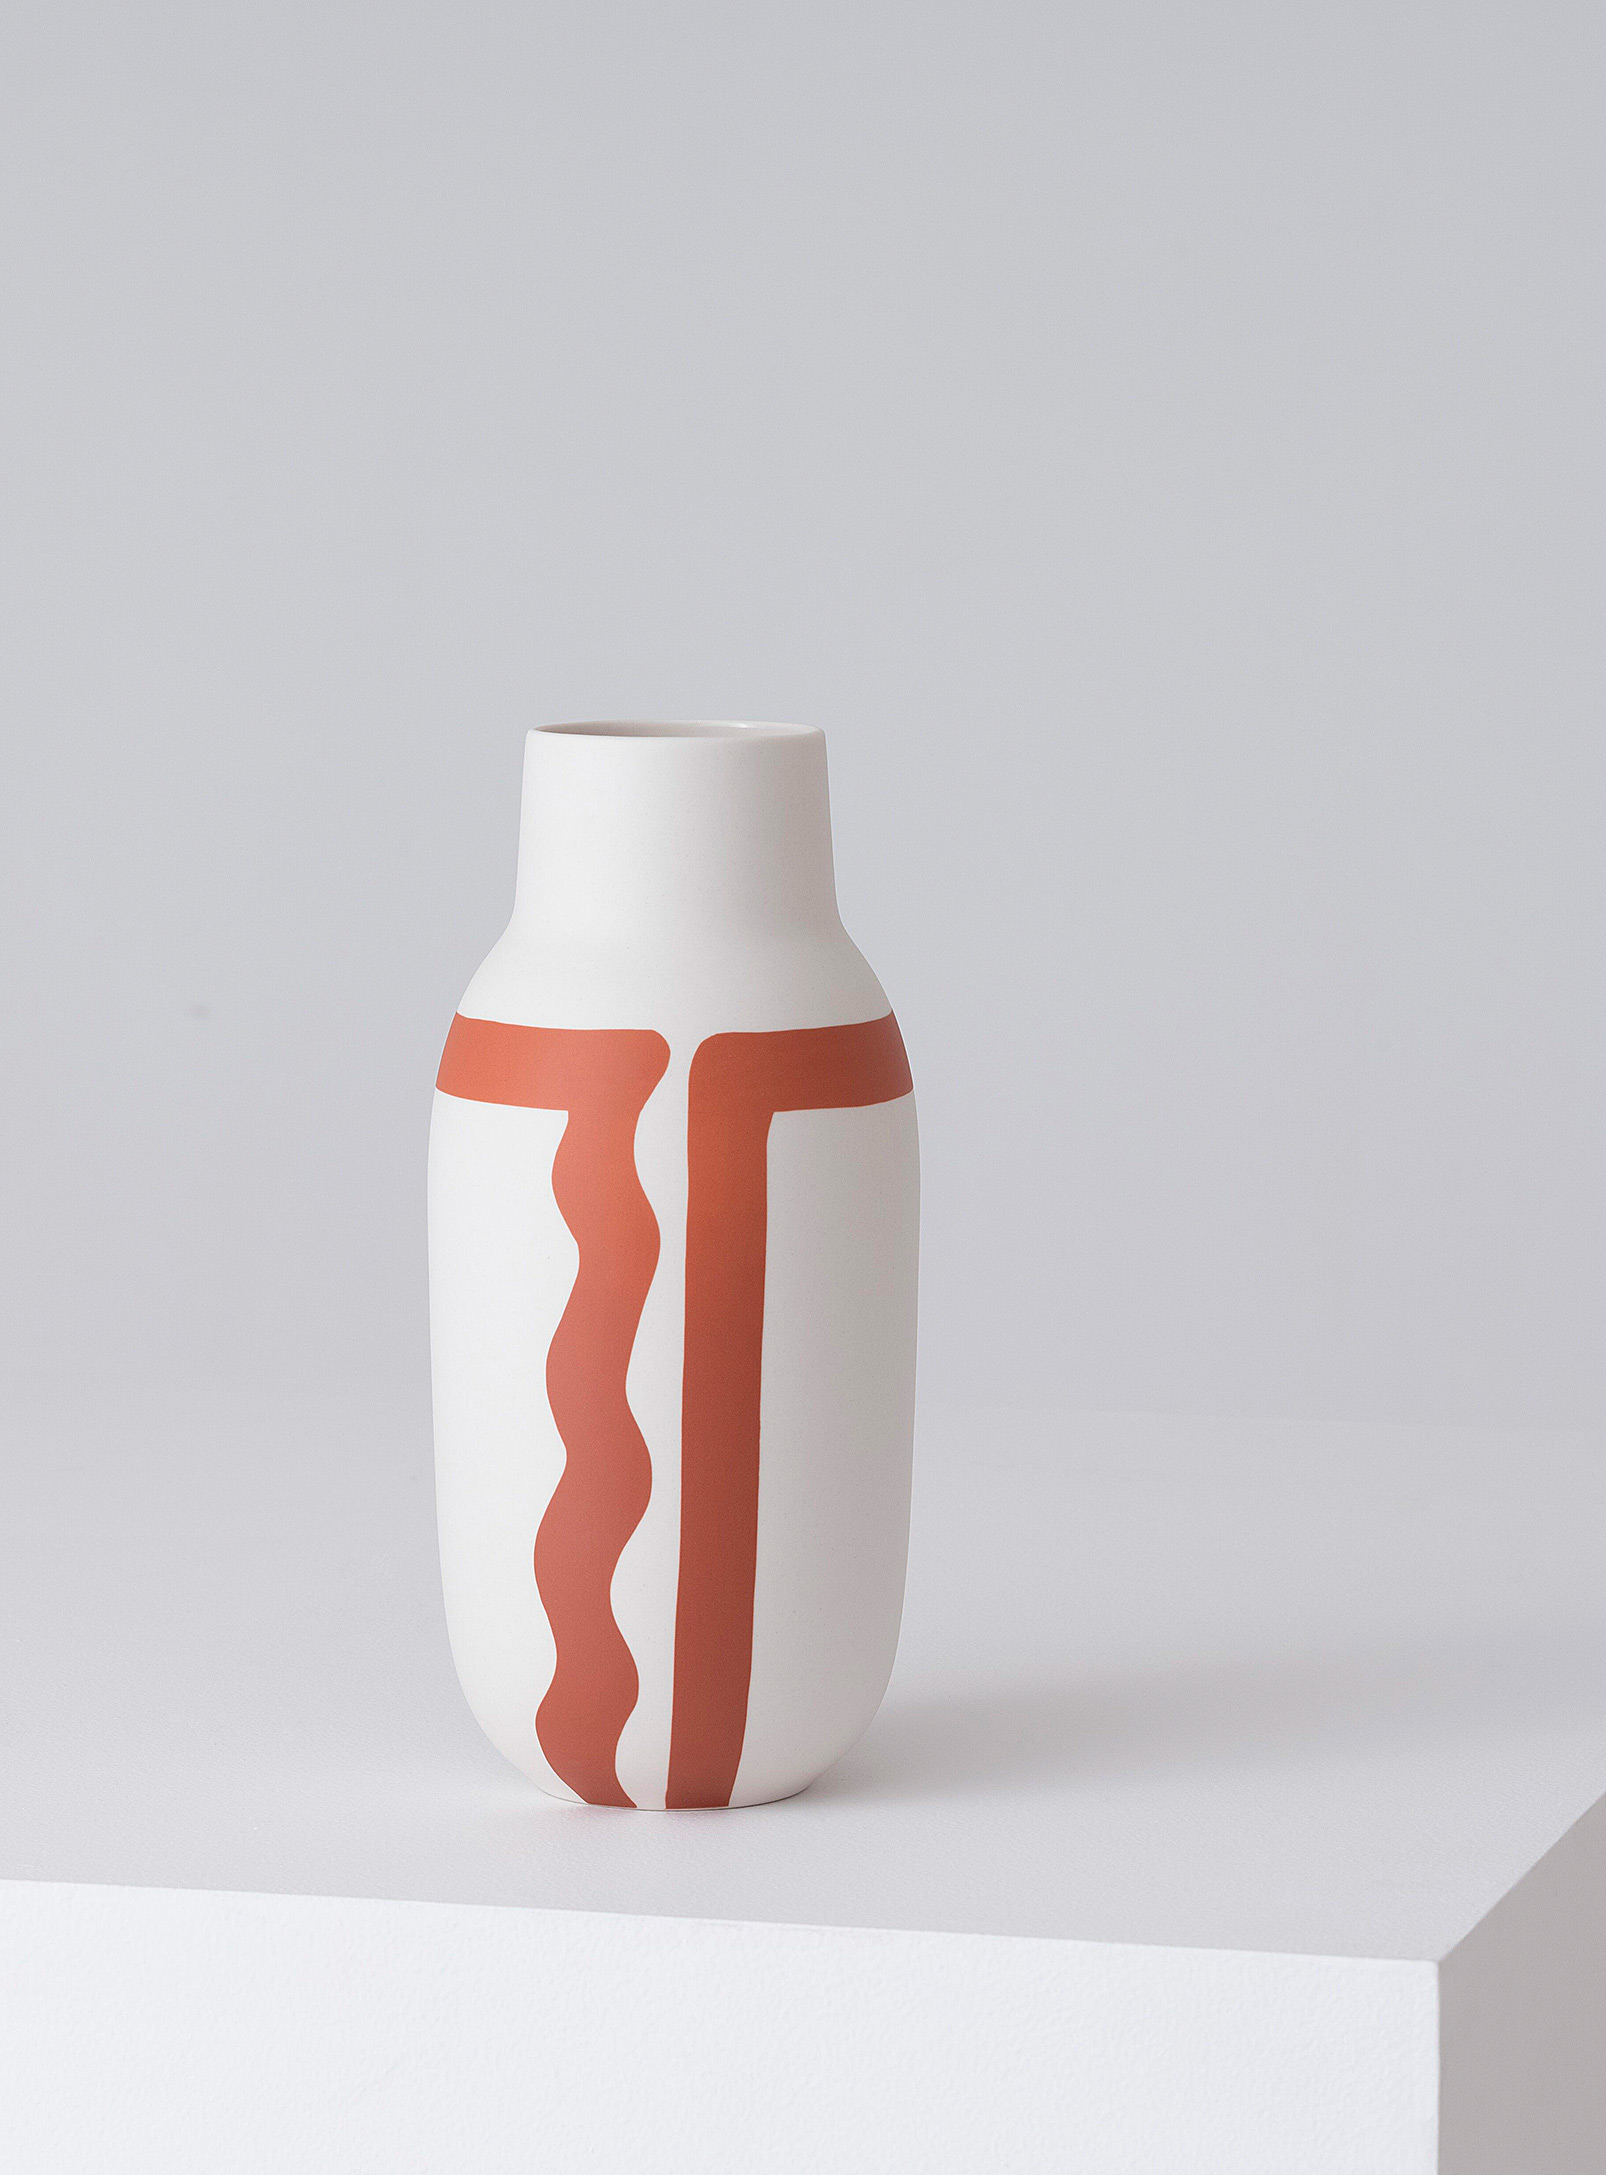 Eq3 Curvy Design Tall Artisanal Vase In Dark Orange